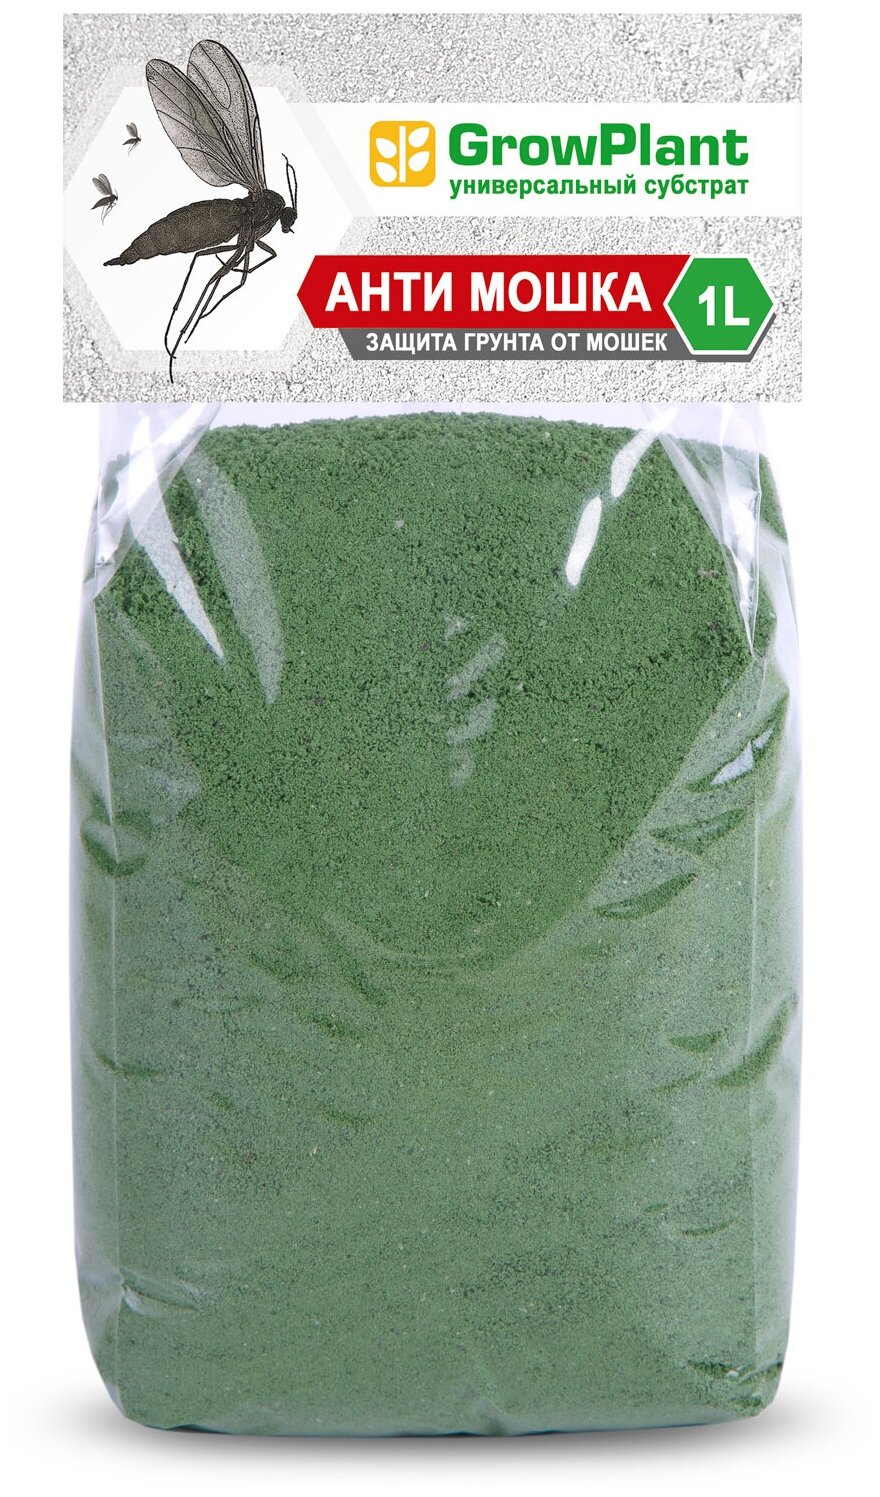 Анти мошка Зелёная 1 литр GrowPlant Green (пеностекло мелкодисперсное) блокатор от мошек слизней улиток.